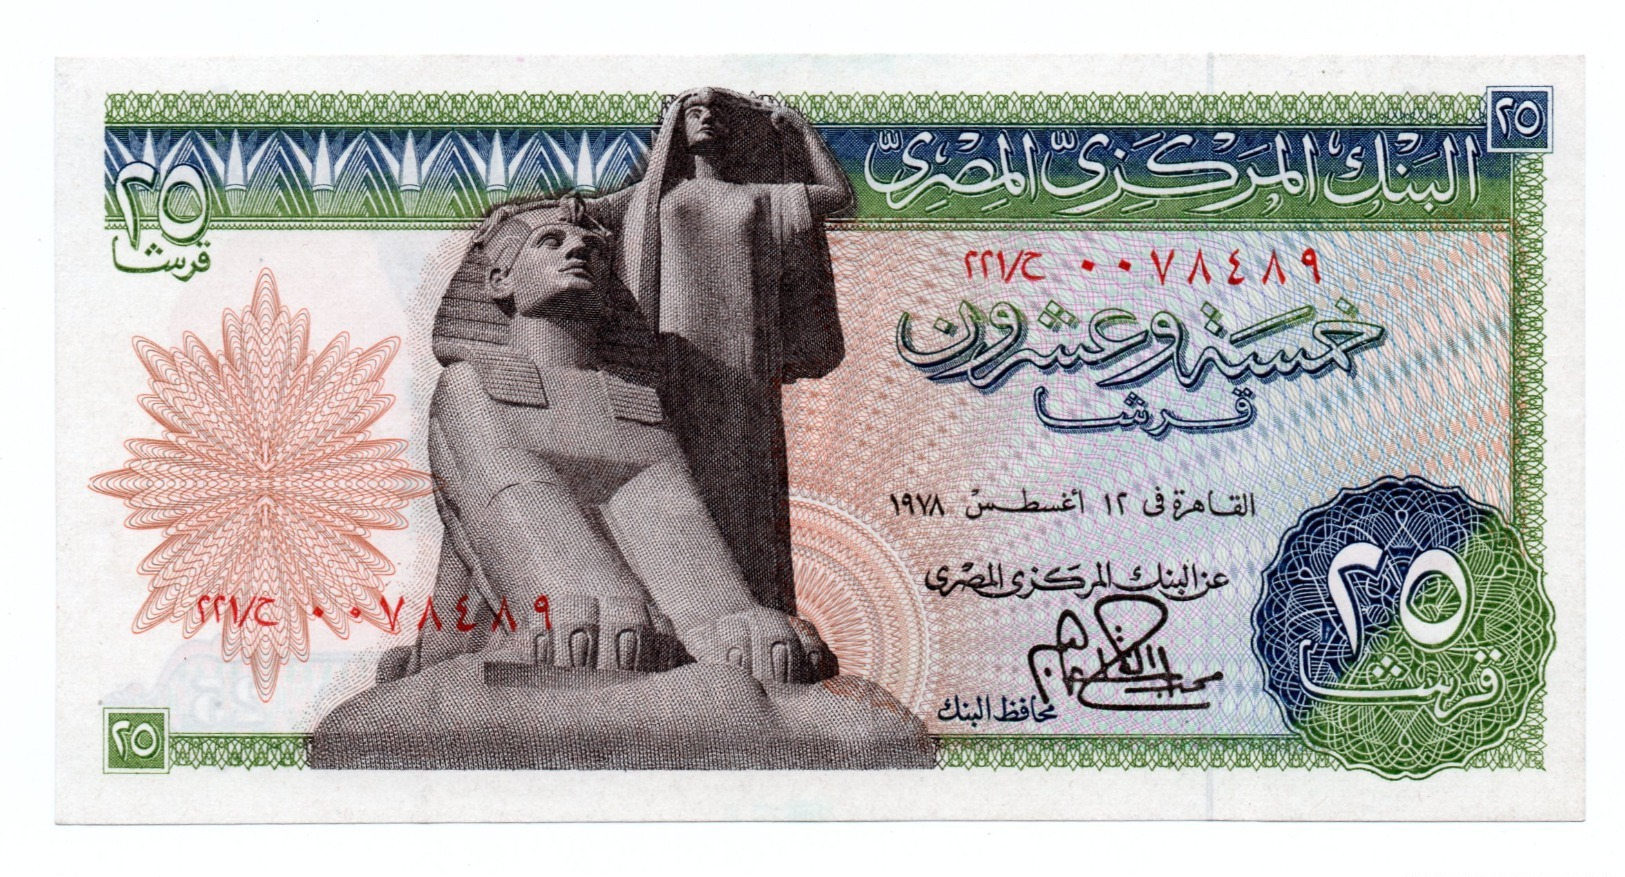 EGYPT»25 PIATRES»1976»P-47 (WORLD PAPER MONEY)»ABOUT UNC CONDITION - Egypte